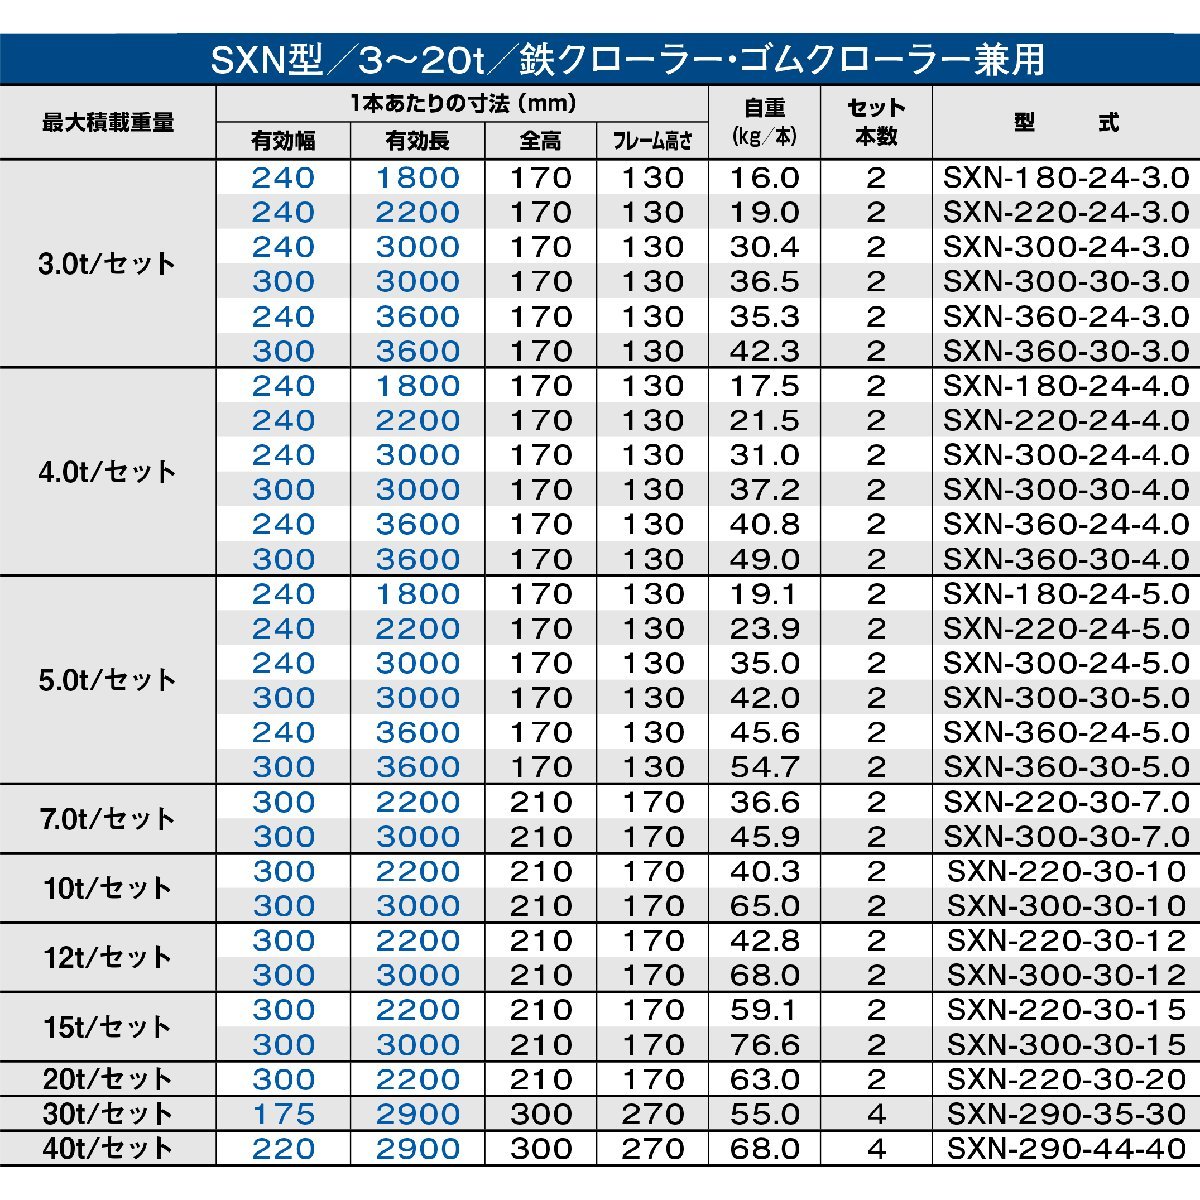 昭和アルミブリッジ SXN-300-30-15 15トン(15t) ツメ式 全長3000/有効幅300(mm) 2本 組_画像3